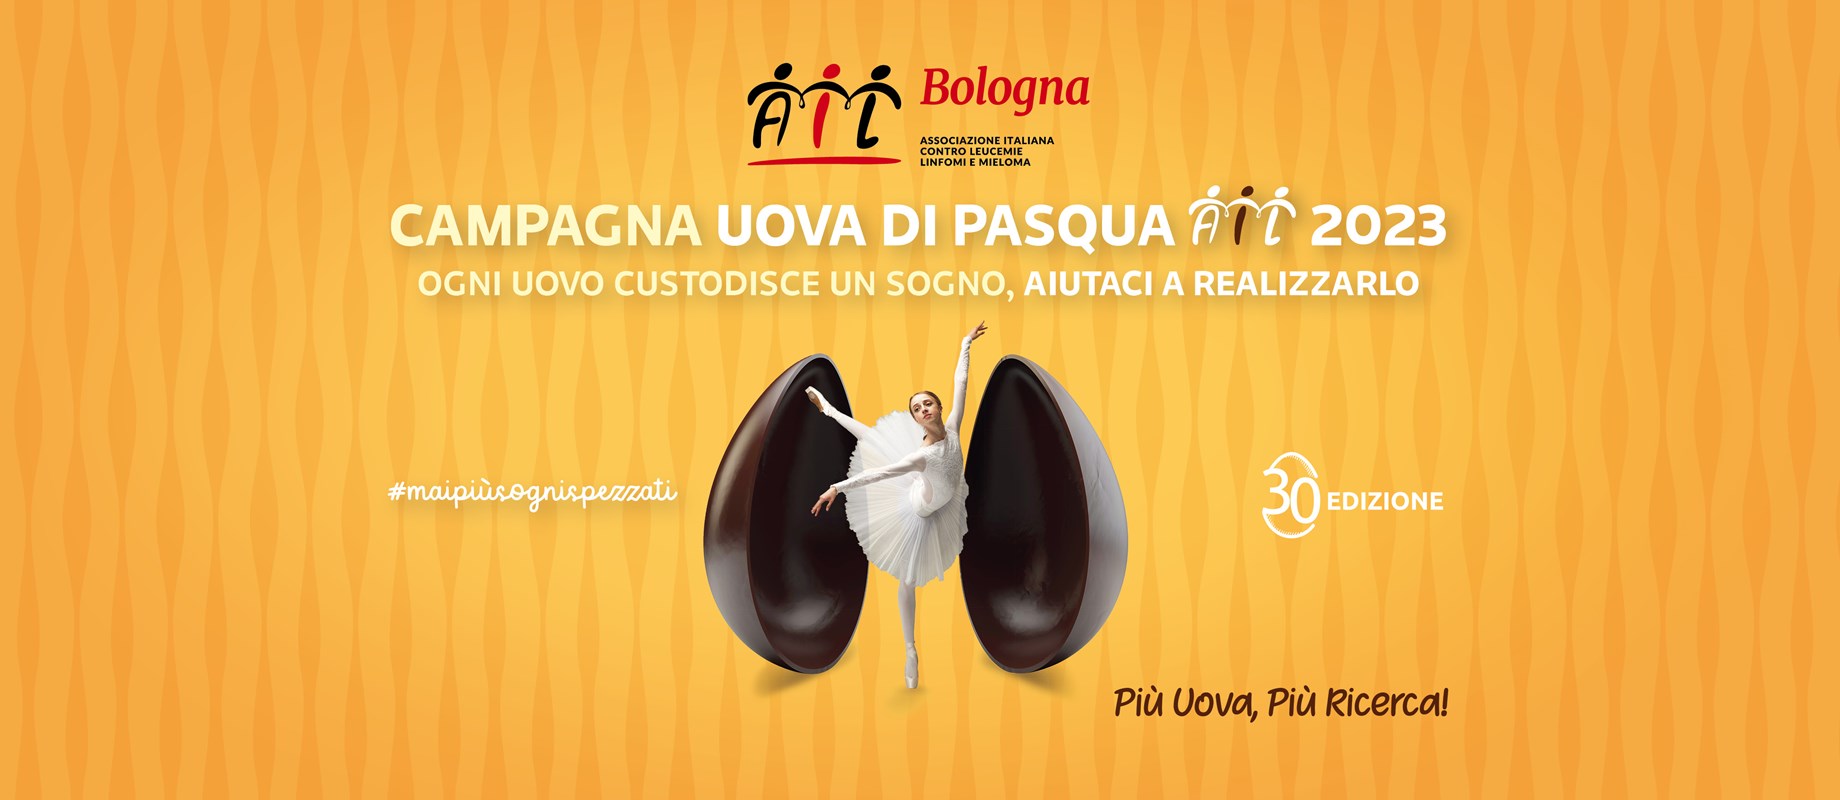 Banca di Bologna è a fianco di AIL Bologn a, a supporto della Campagna Uova di Pasqua e di un importante Progetto di Ricerca Scientifica 